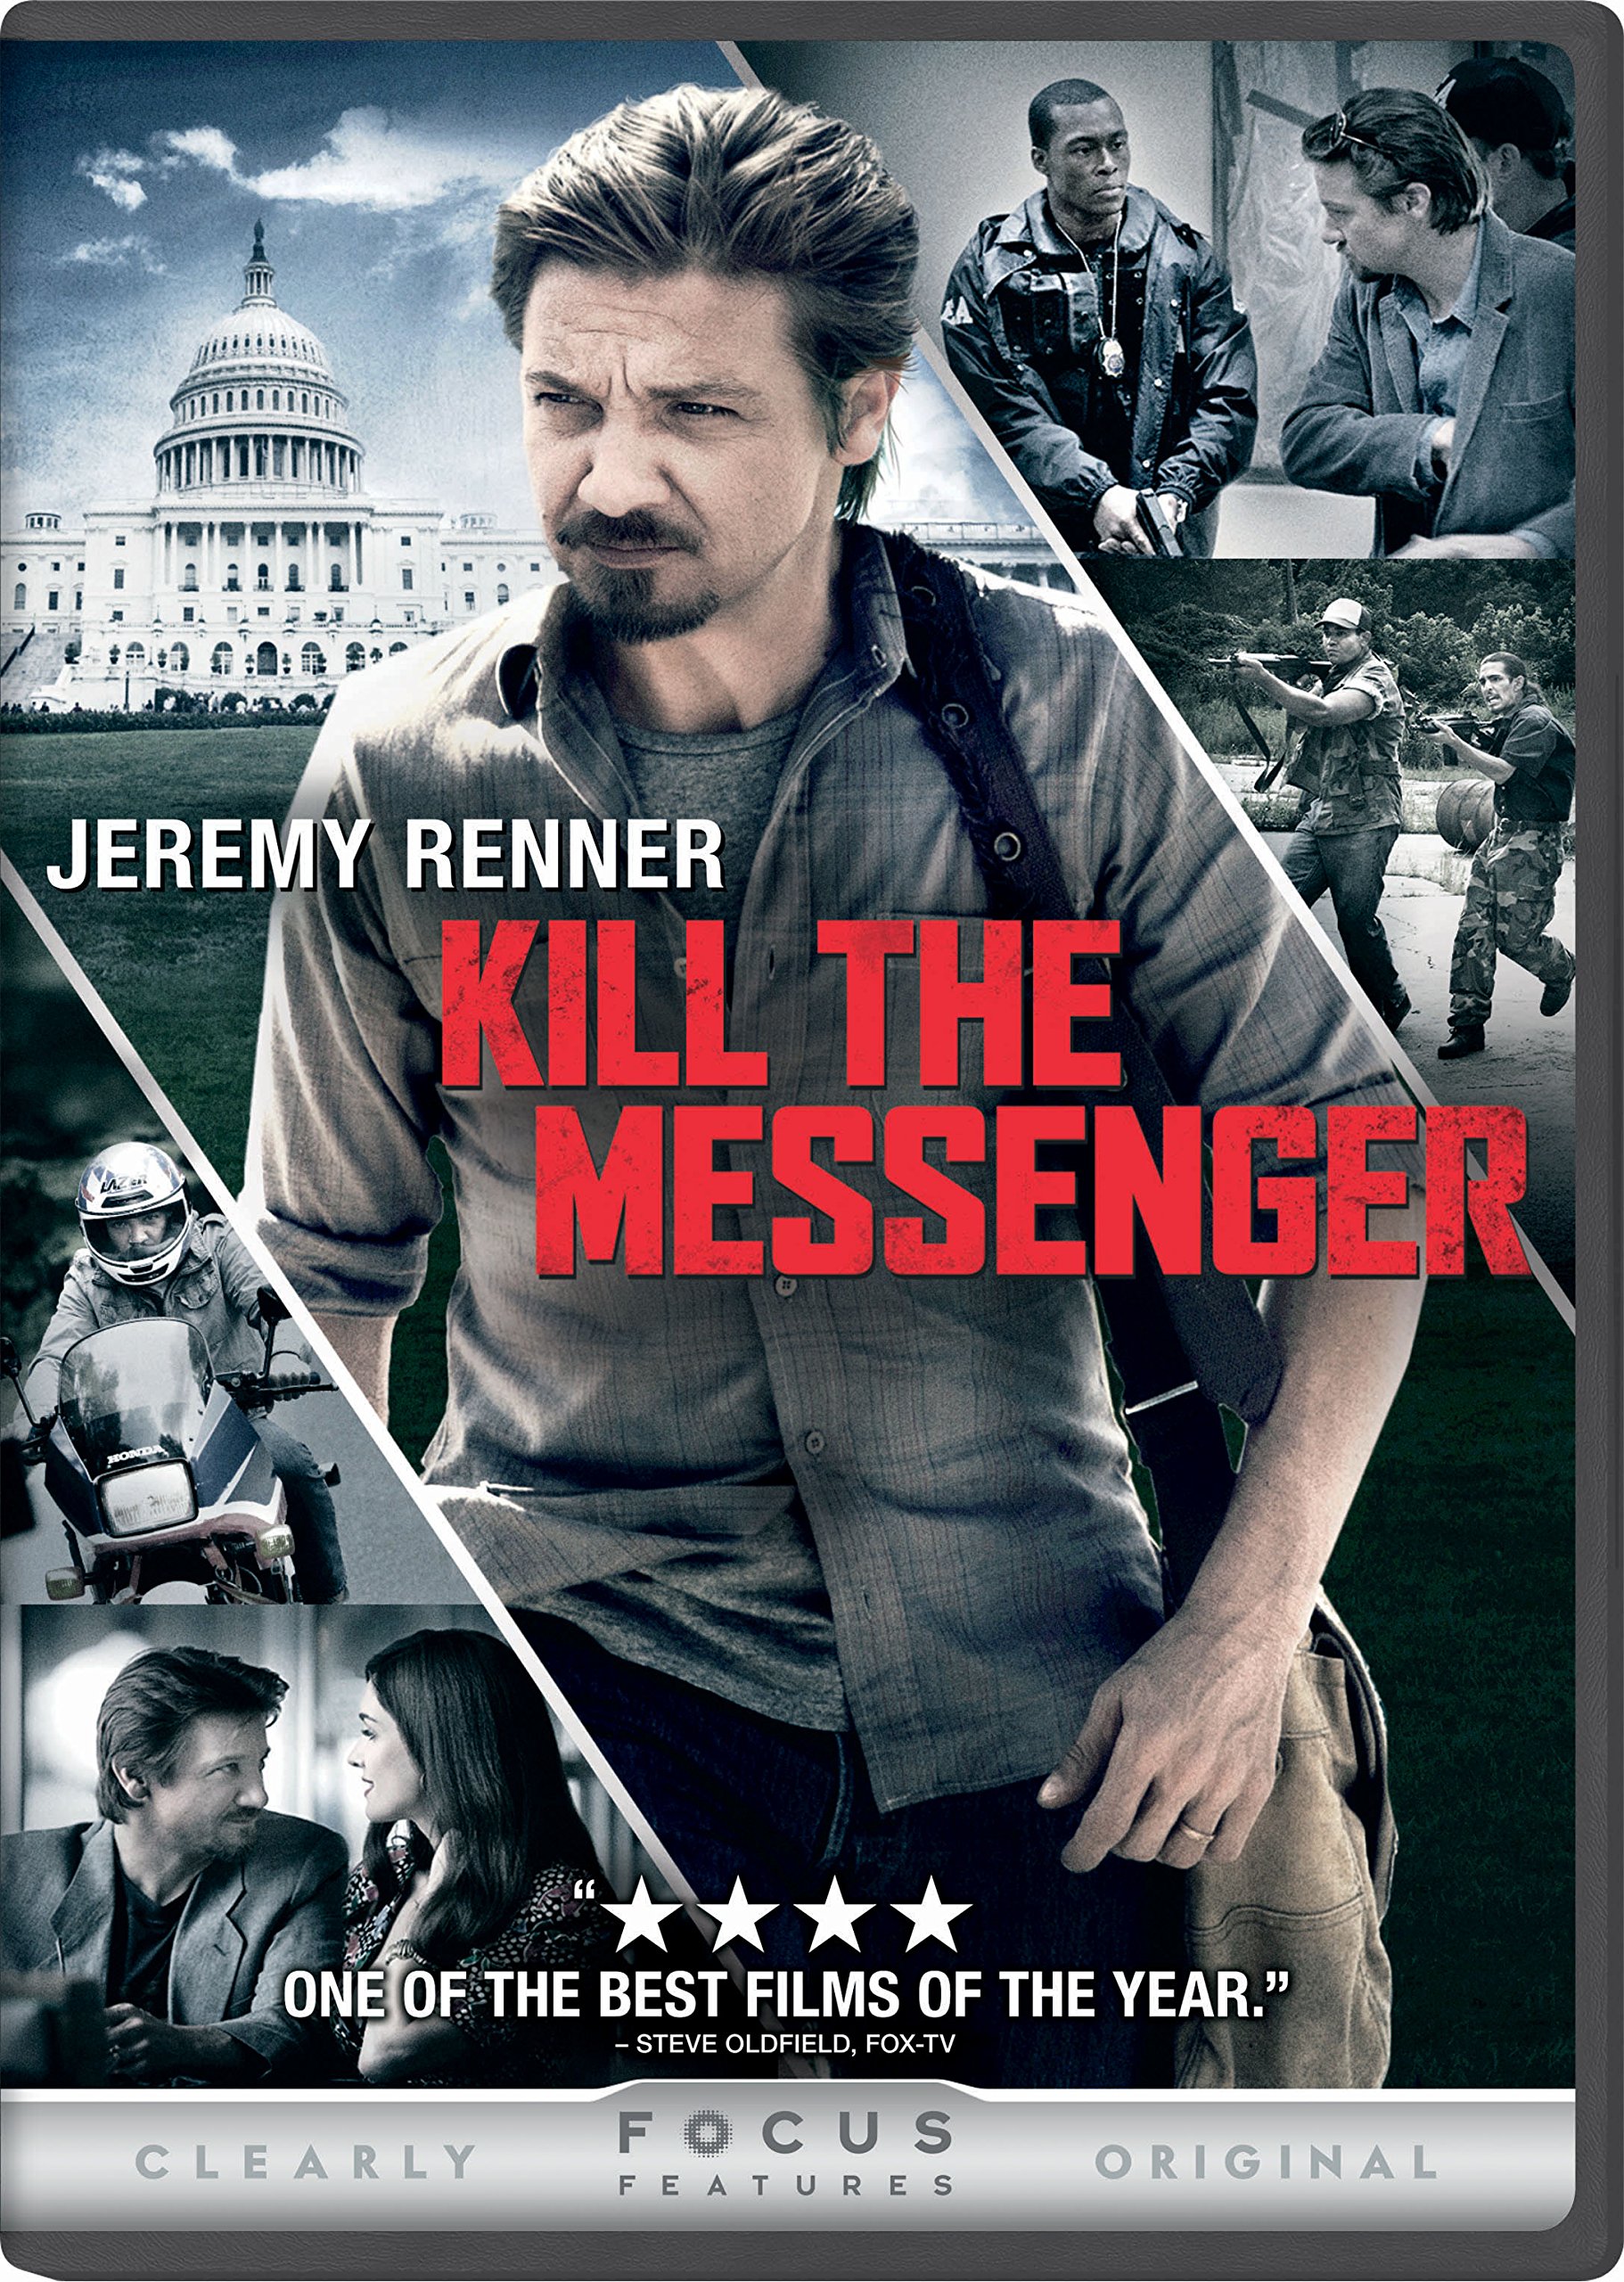 Killing the messenger. Kill the Messenger 2014 poster. Kill the Messenger (2-Disc Blu-ray/DVD Set, 2015) w/Slip Cover - Jeremy Renner. Посланник (DVD).